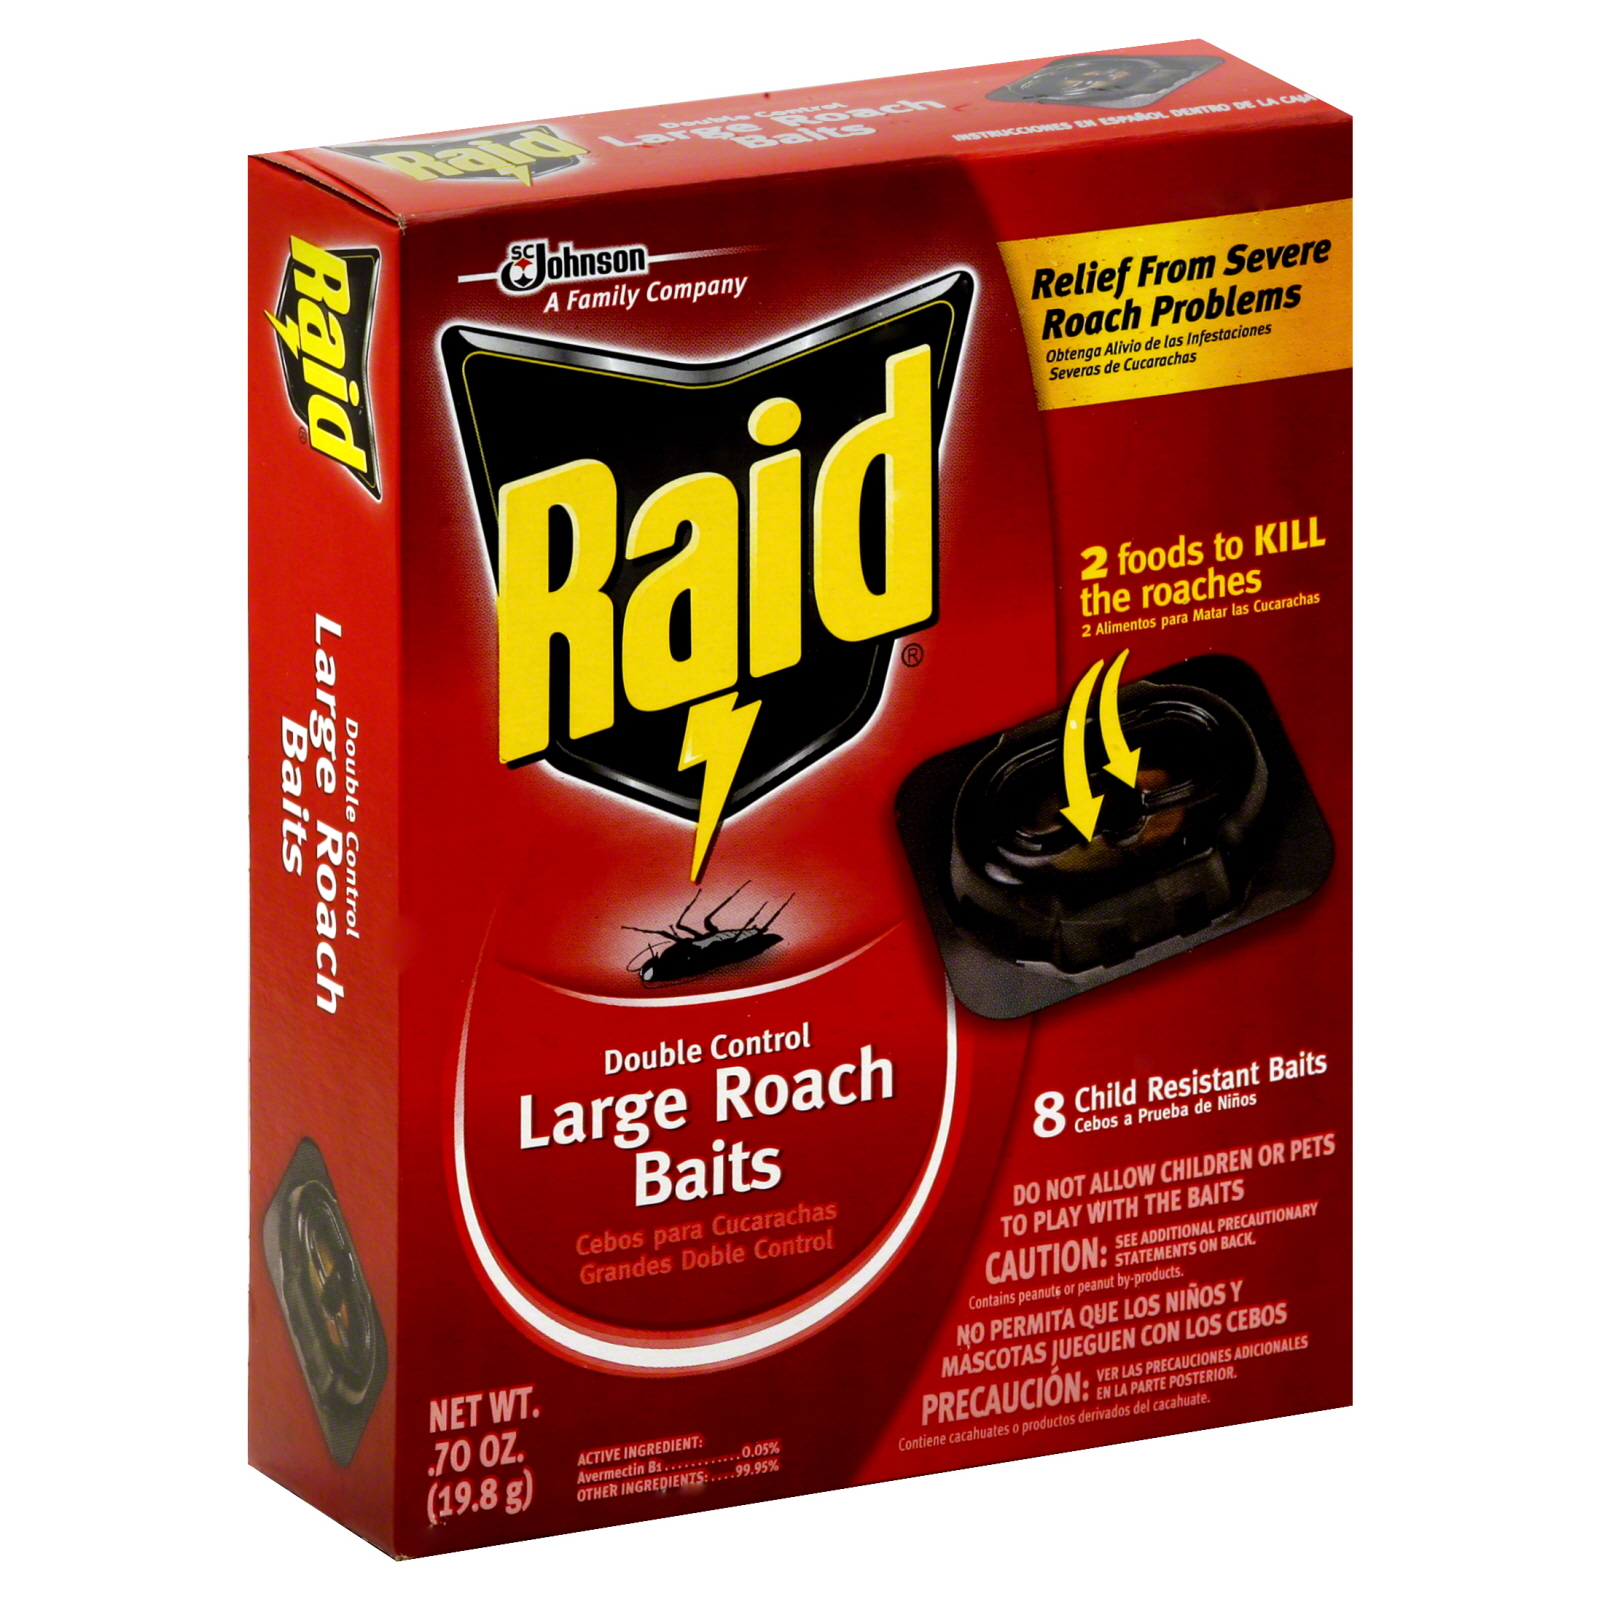 Raid Roach Baits, Large, Double Control, 8 - 0.70 oz (19.8 g) baits